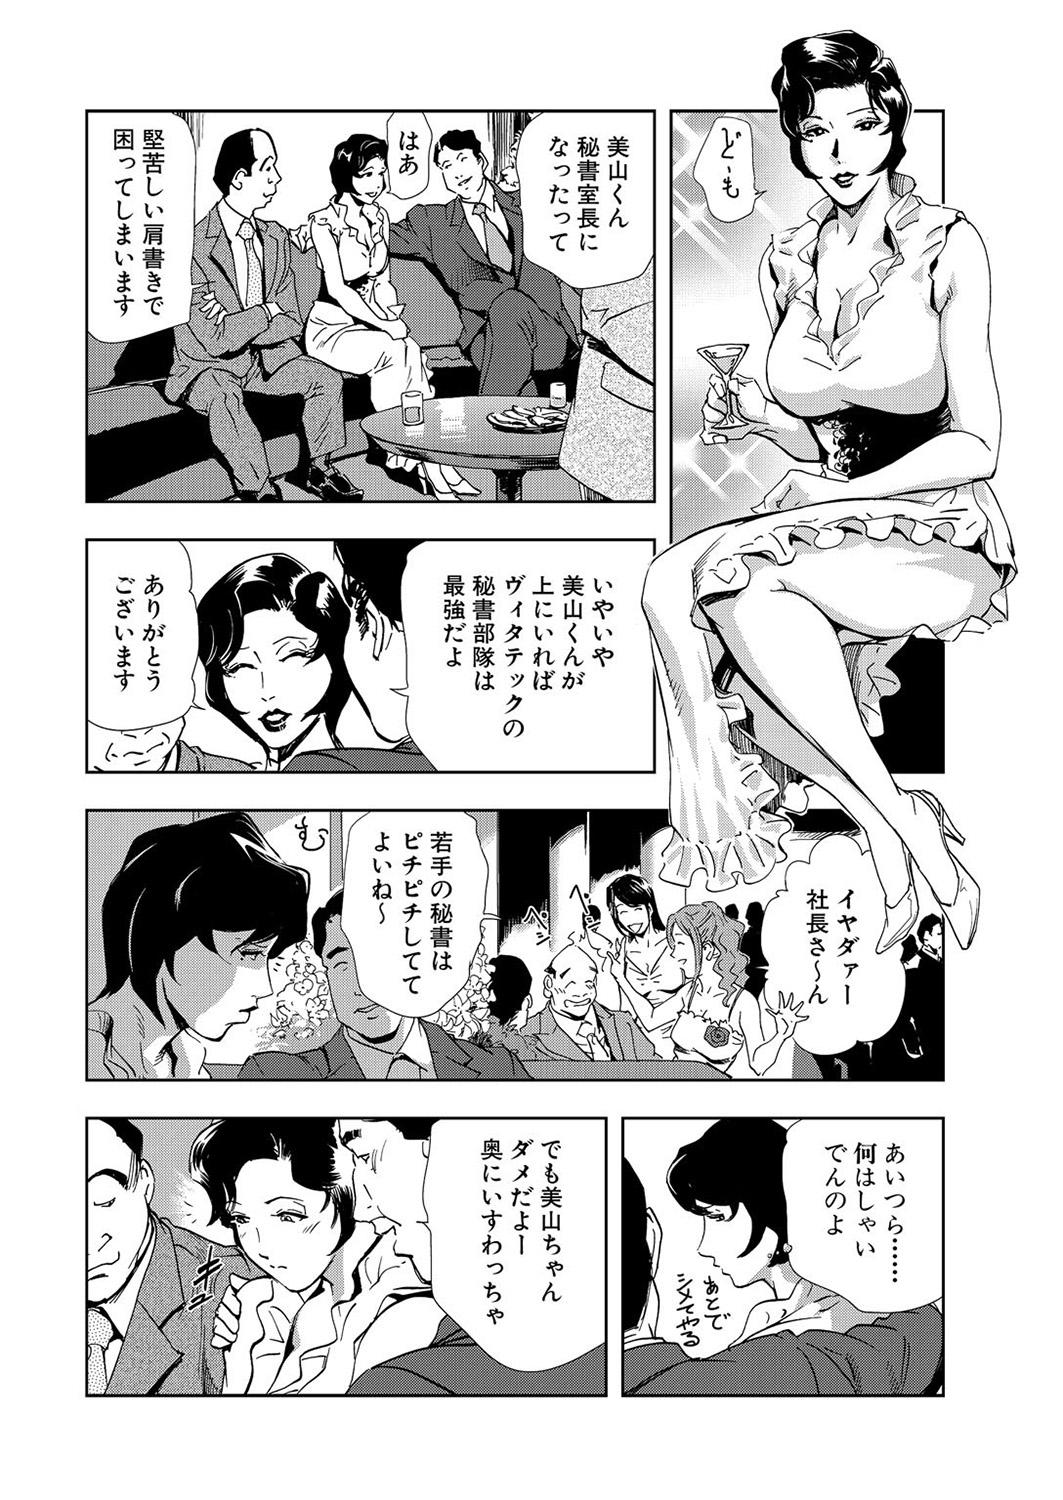 Slutty Nikuhisyo Yukiko 7 Duro - Page 6